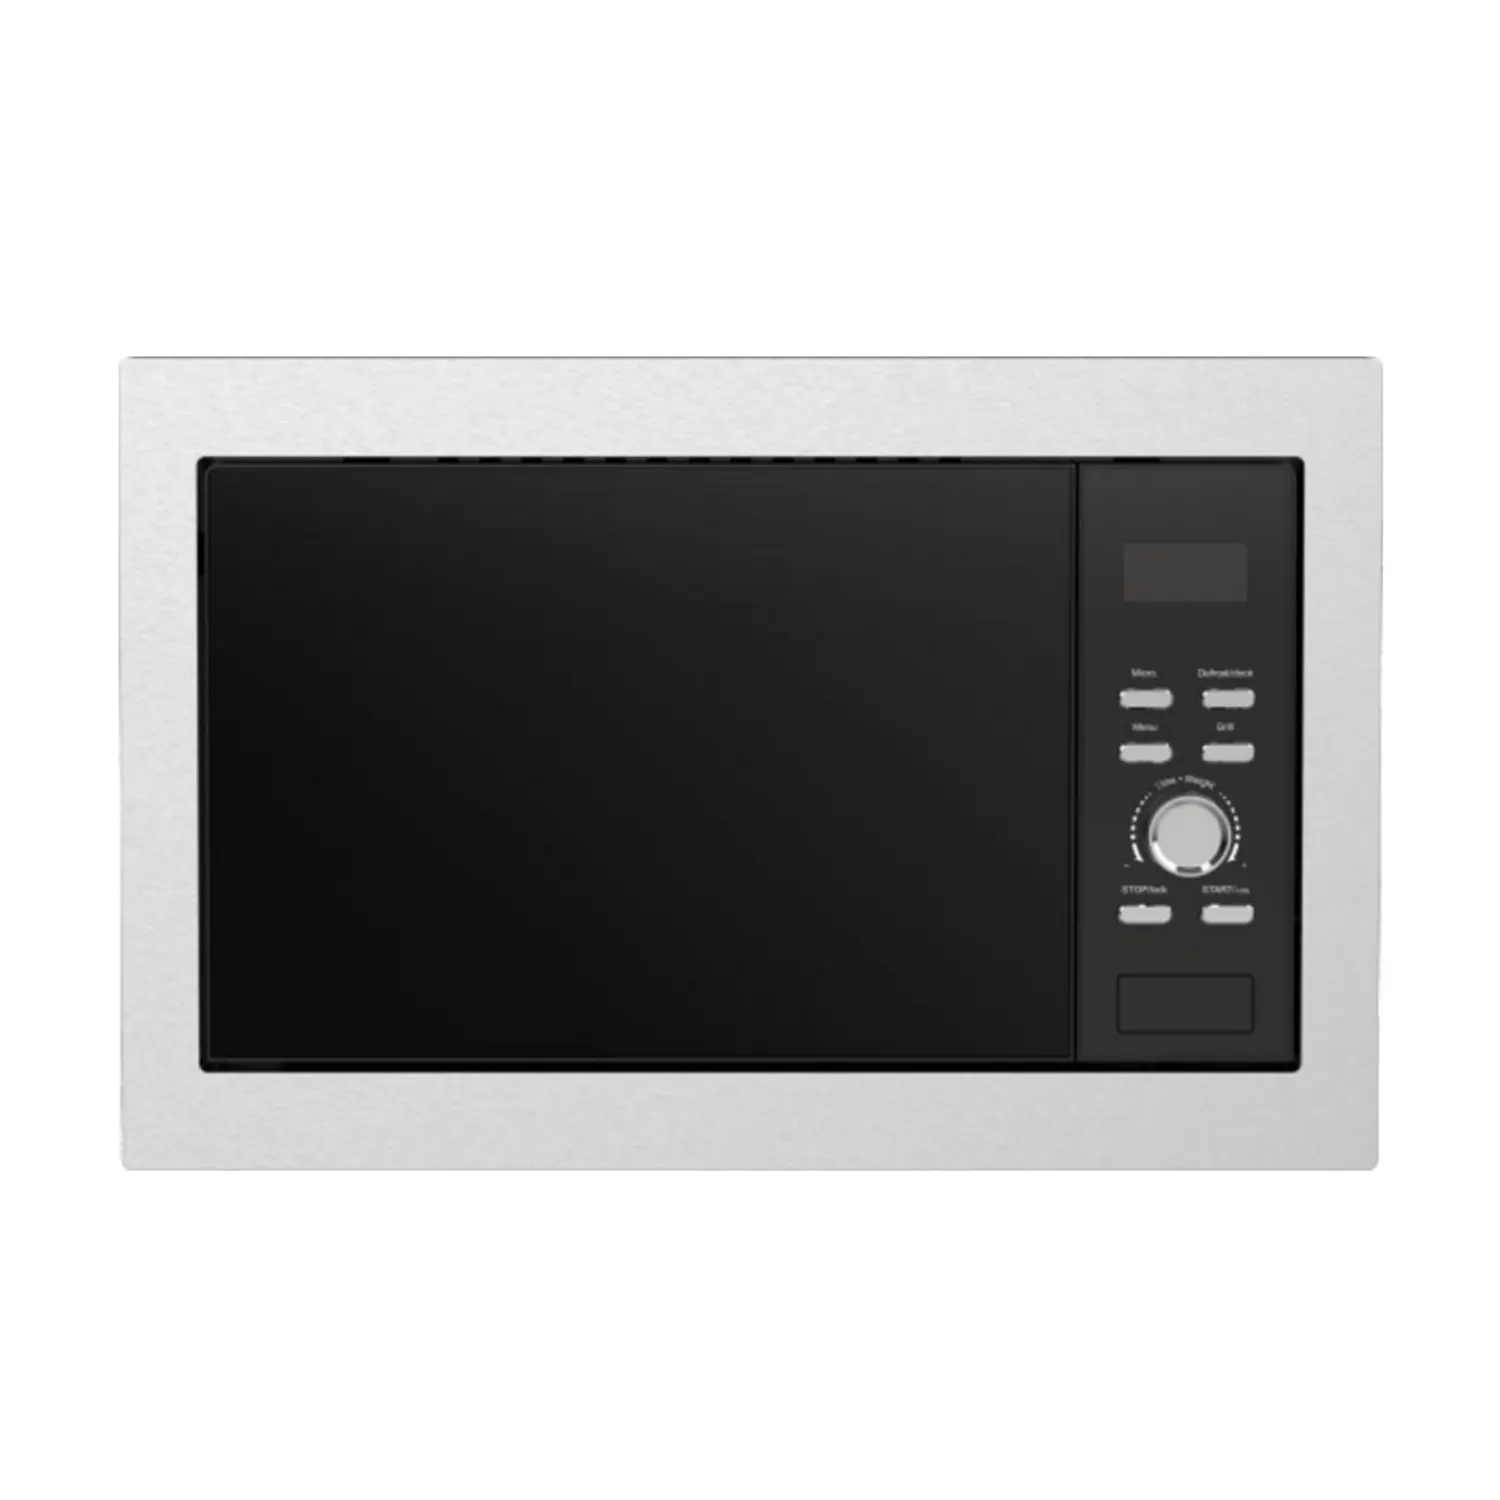 OEM Heimgebrauch 23L Mikrowerkzeug-Ofen Digital 240V Heißluftfritteusofen 4100W Ölfreier Digitaler Küchenofen